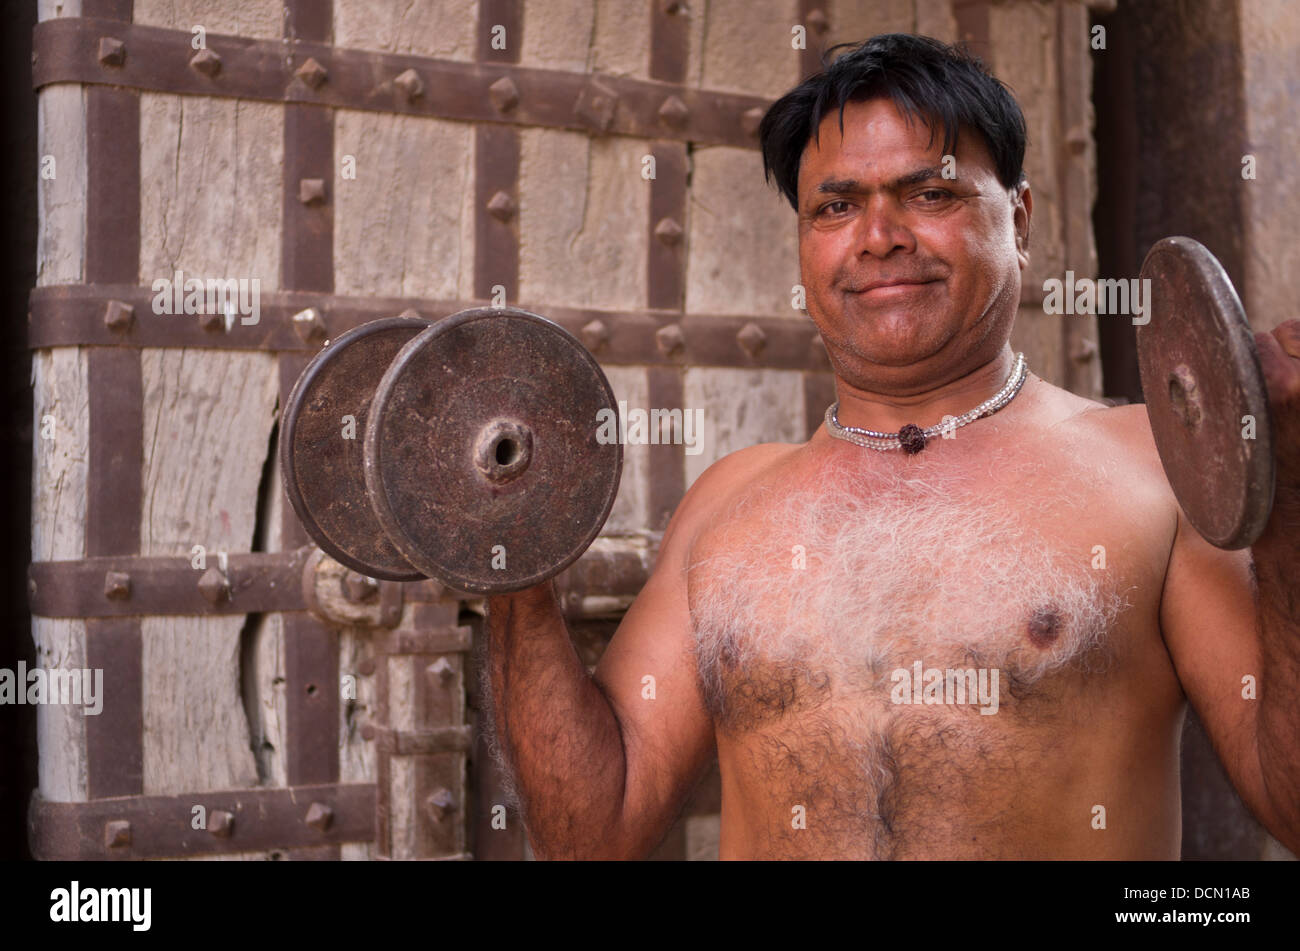 L'homme indien avec formation à l'extérieur des portes de dumbells Meherangarh Fort - Jodhpur, Rajashtan, Inde Banque D'Images